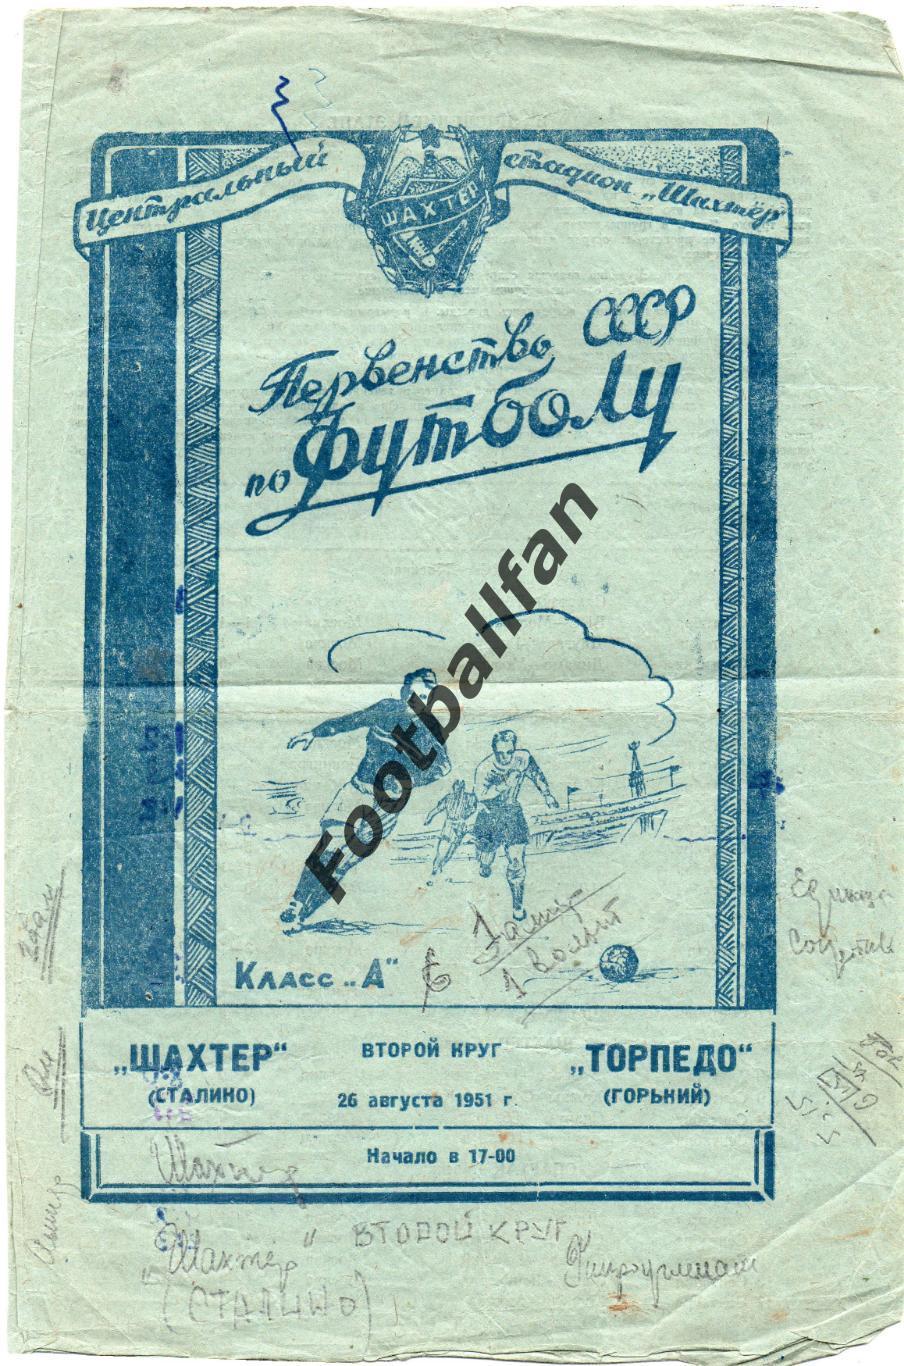 Шахтер Сталино ( Донецк ) - Торпедо Горький 26.08.1951